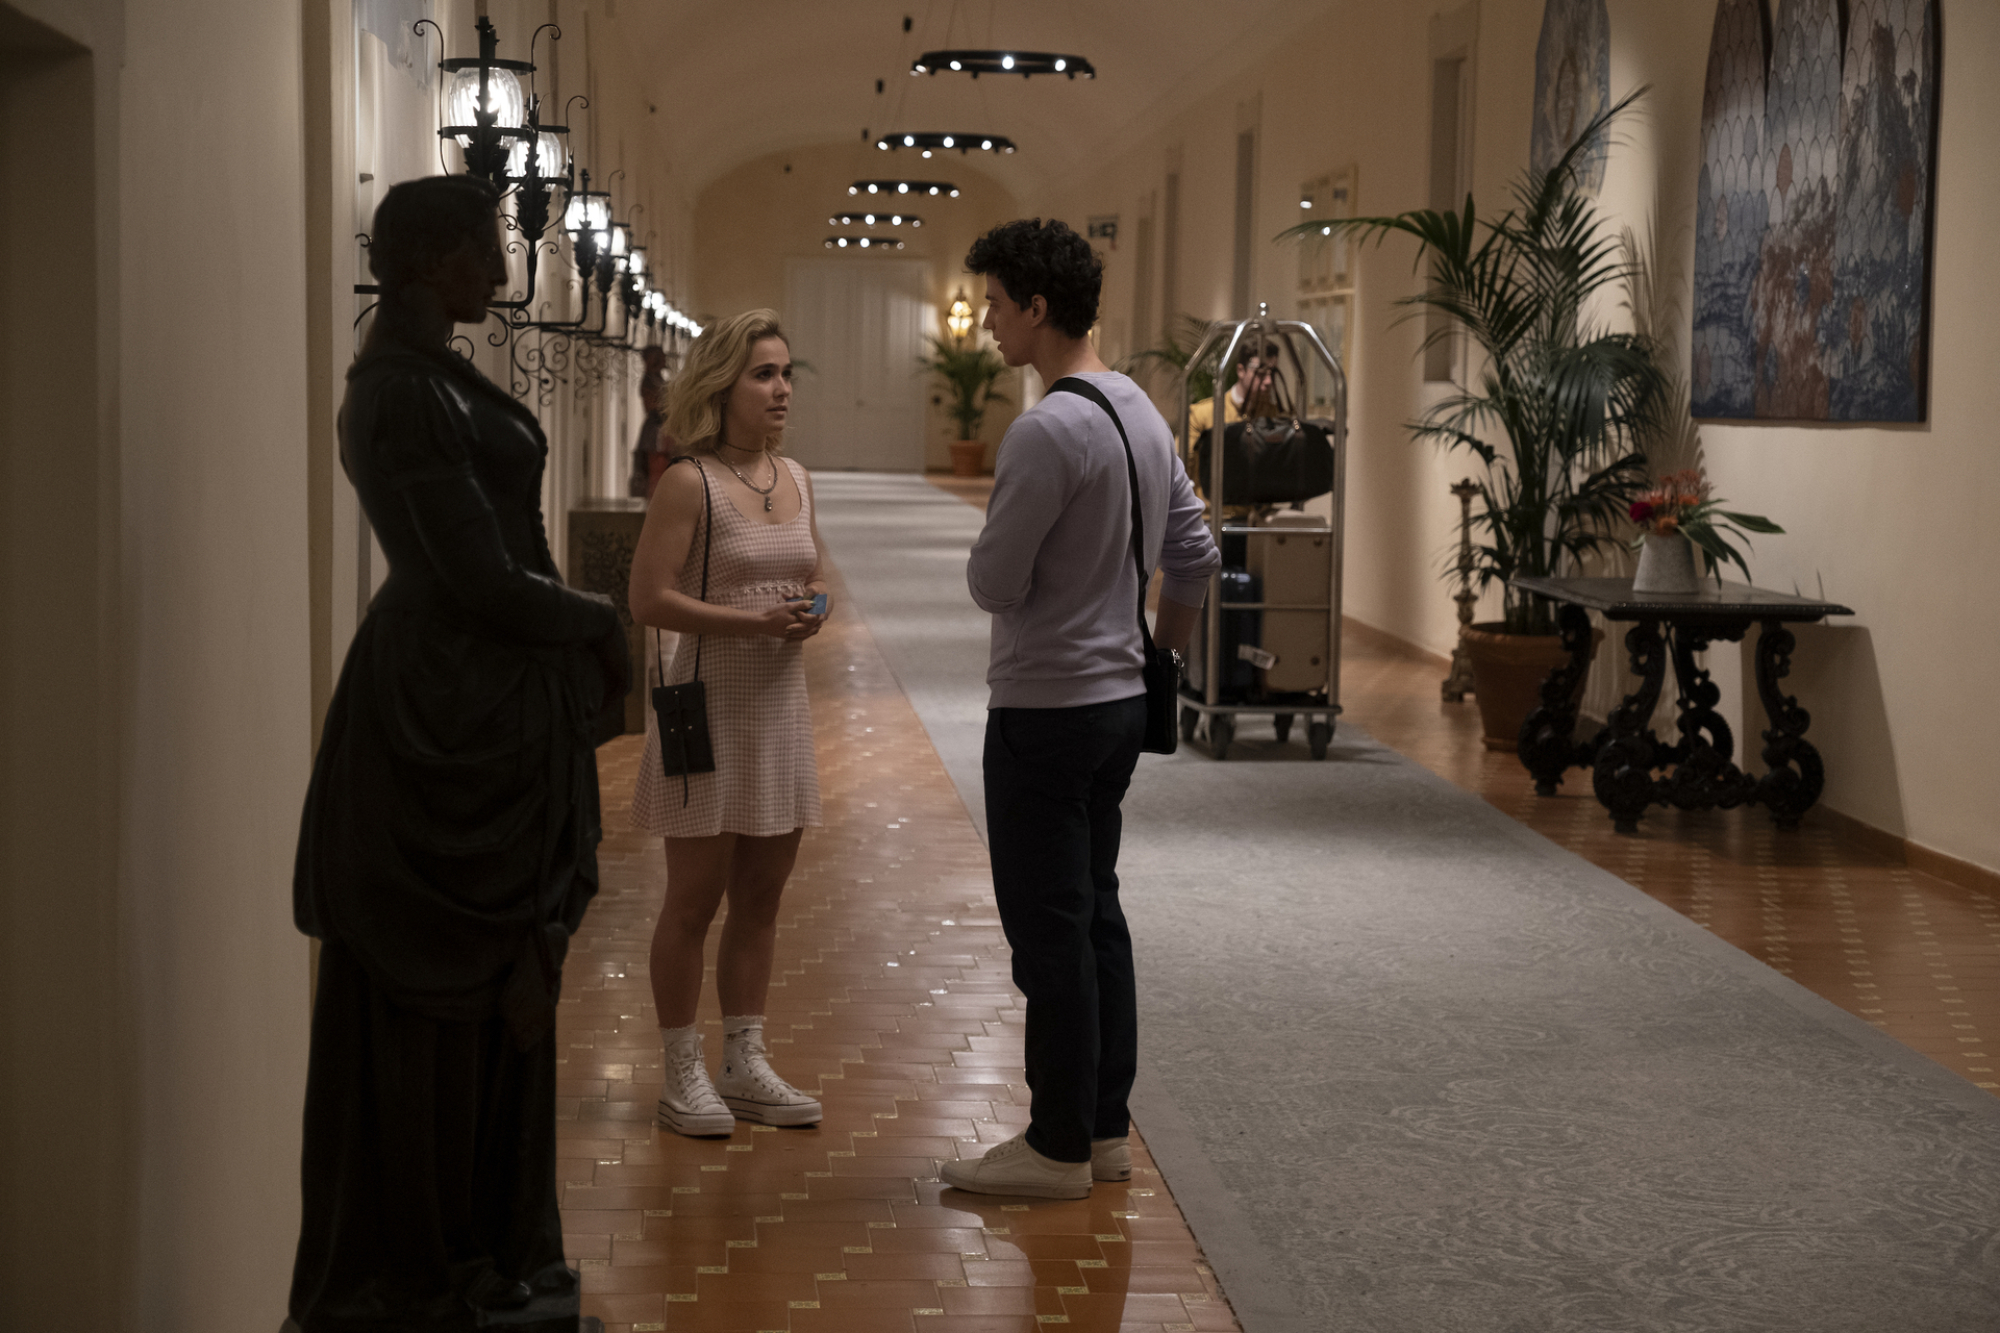 Portia et Albie discutent dans le couloir de l'hôtel.  Portia porte une robe à carreaux rose. 